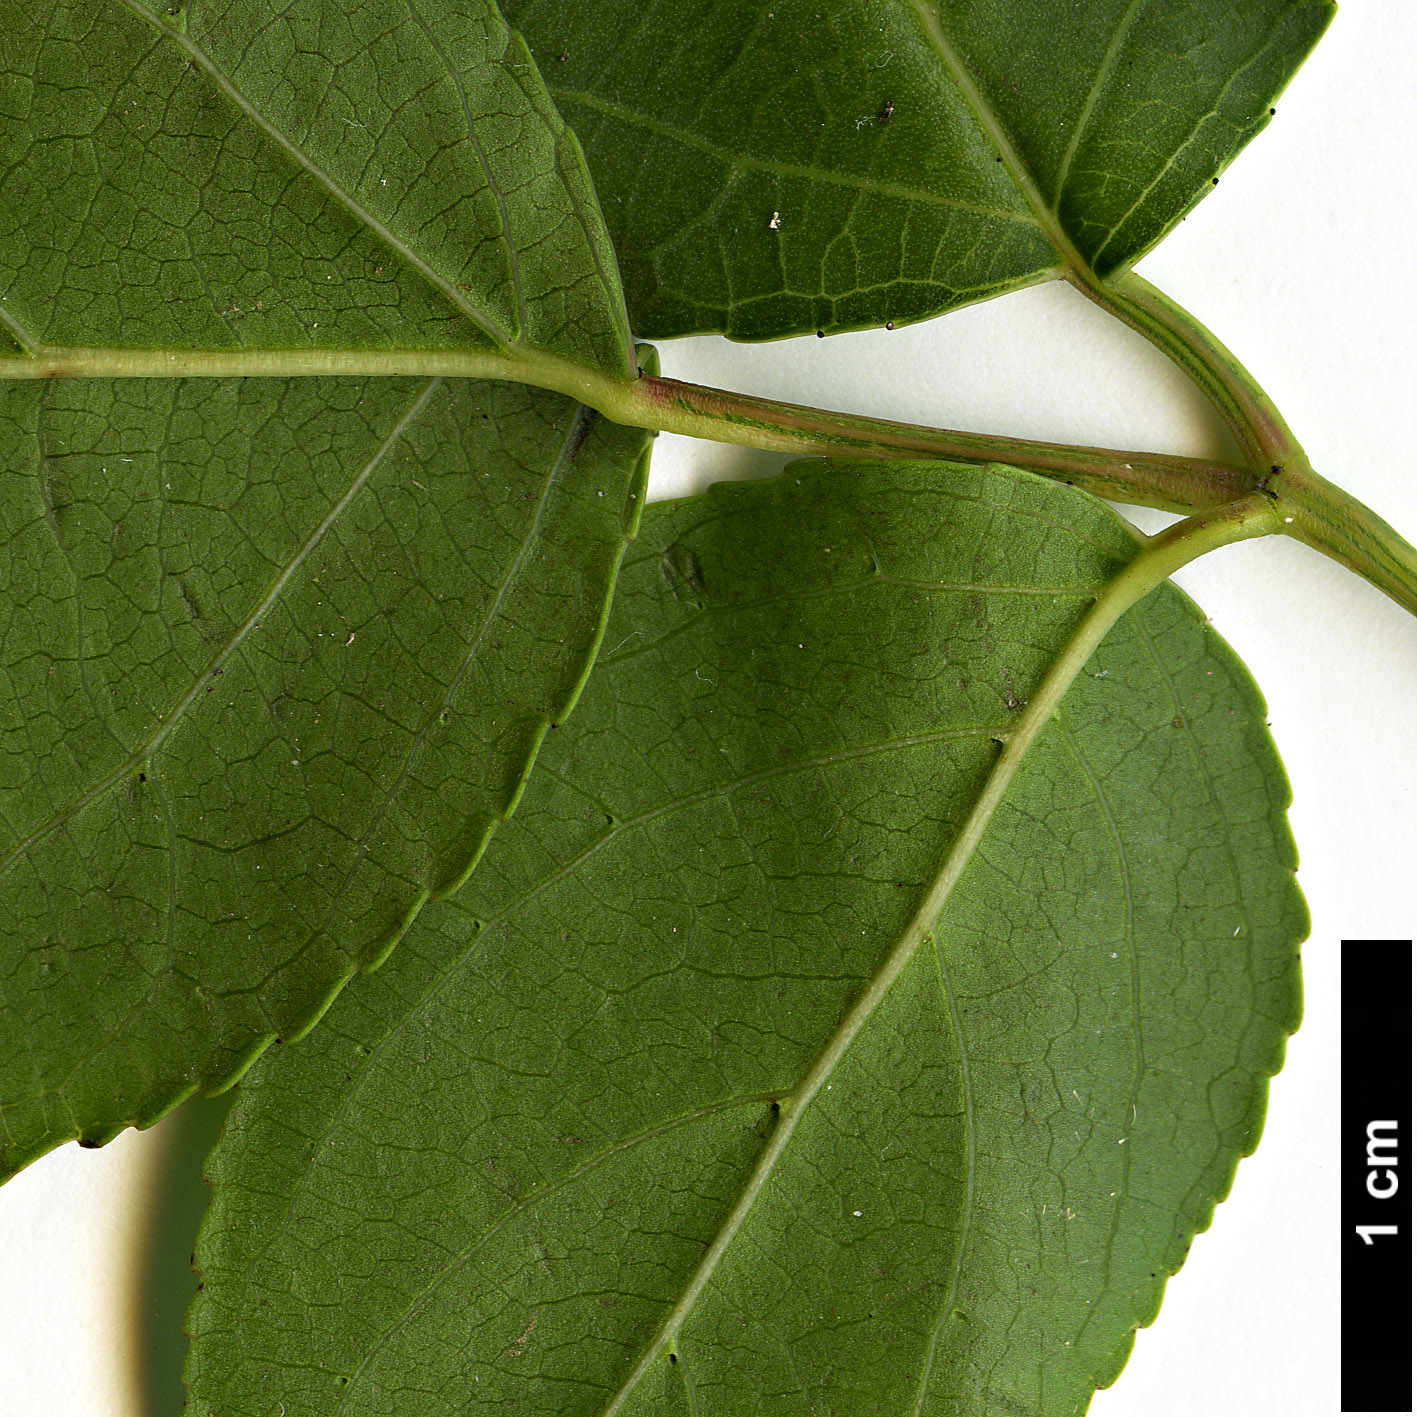 High resolution image: Family: Phyllanthaceae - Genus: Bischofia - Taxon: javanica